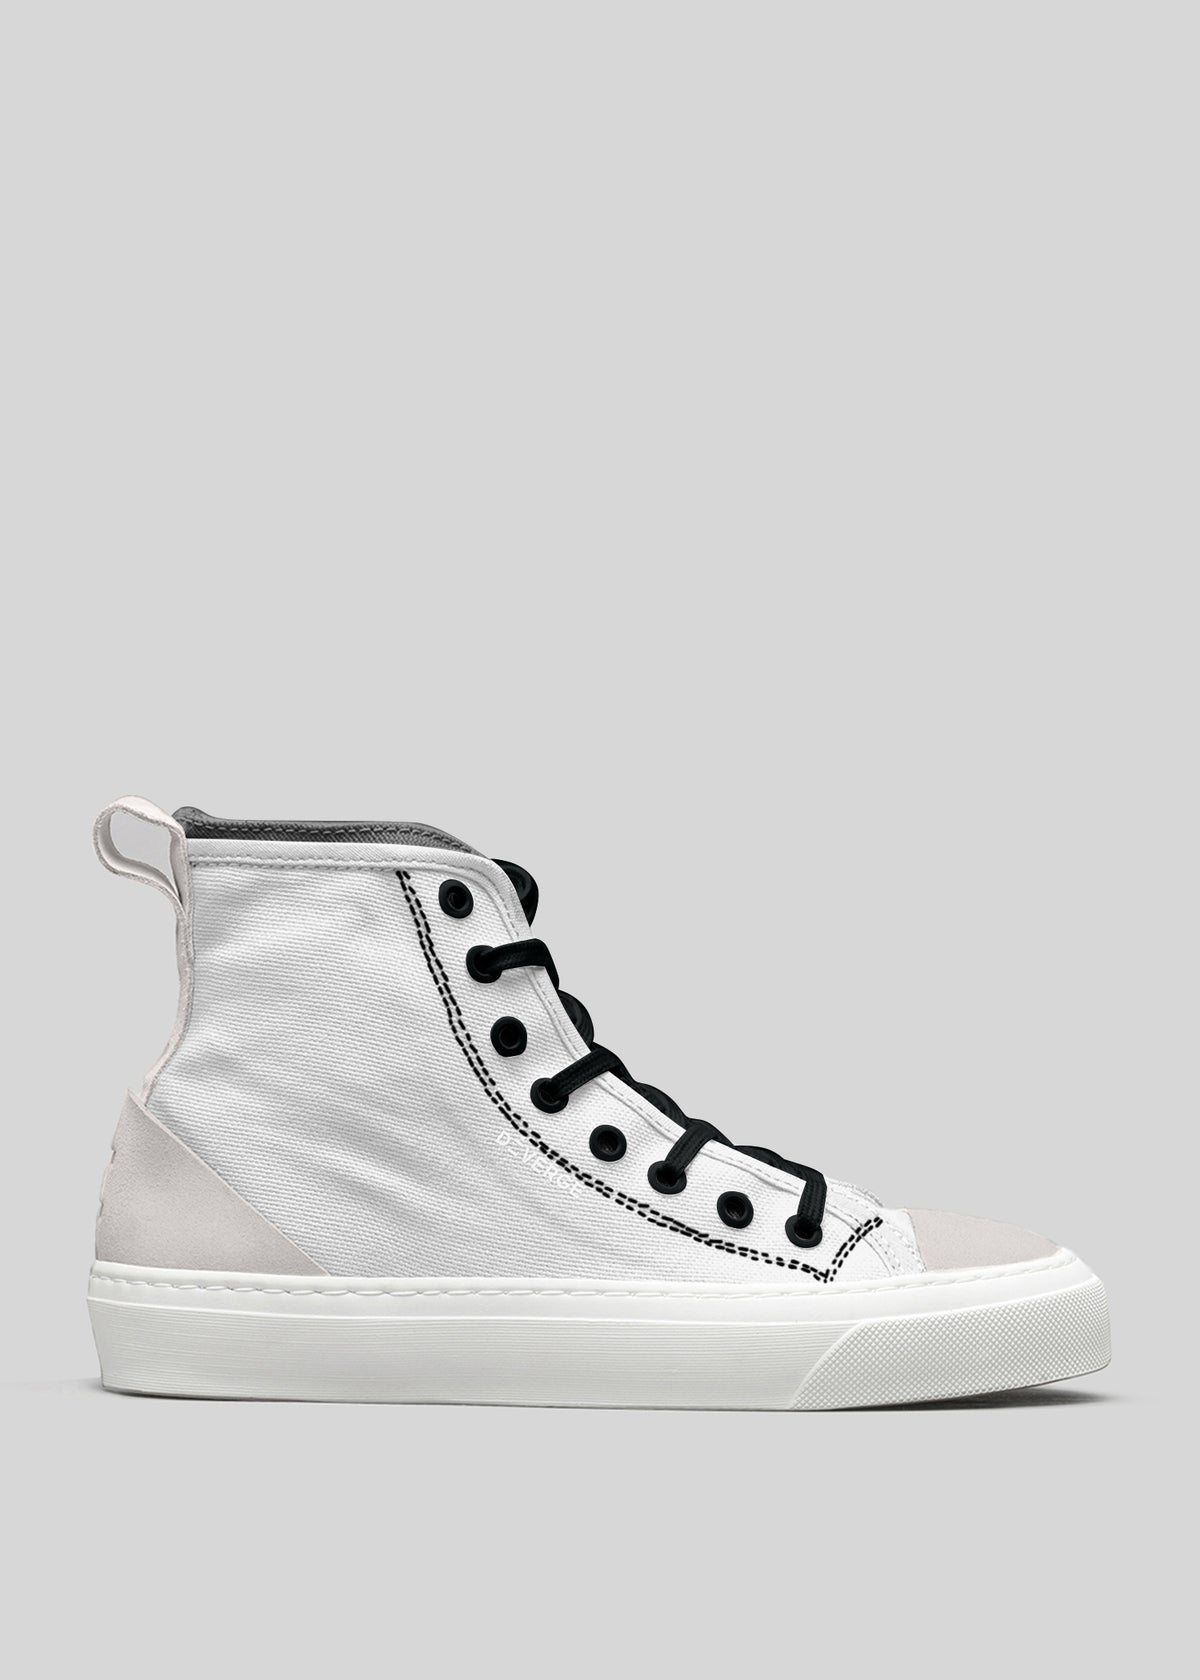 TH0004 by Martim sneaker alta in tela con lacci neri e suola in gomma bianca, su sfondo grigio.